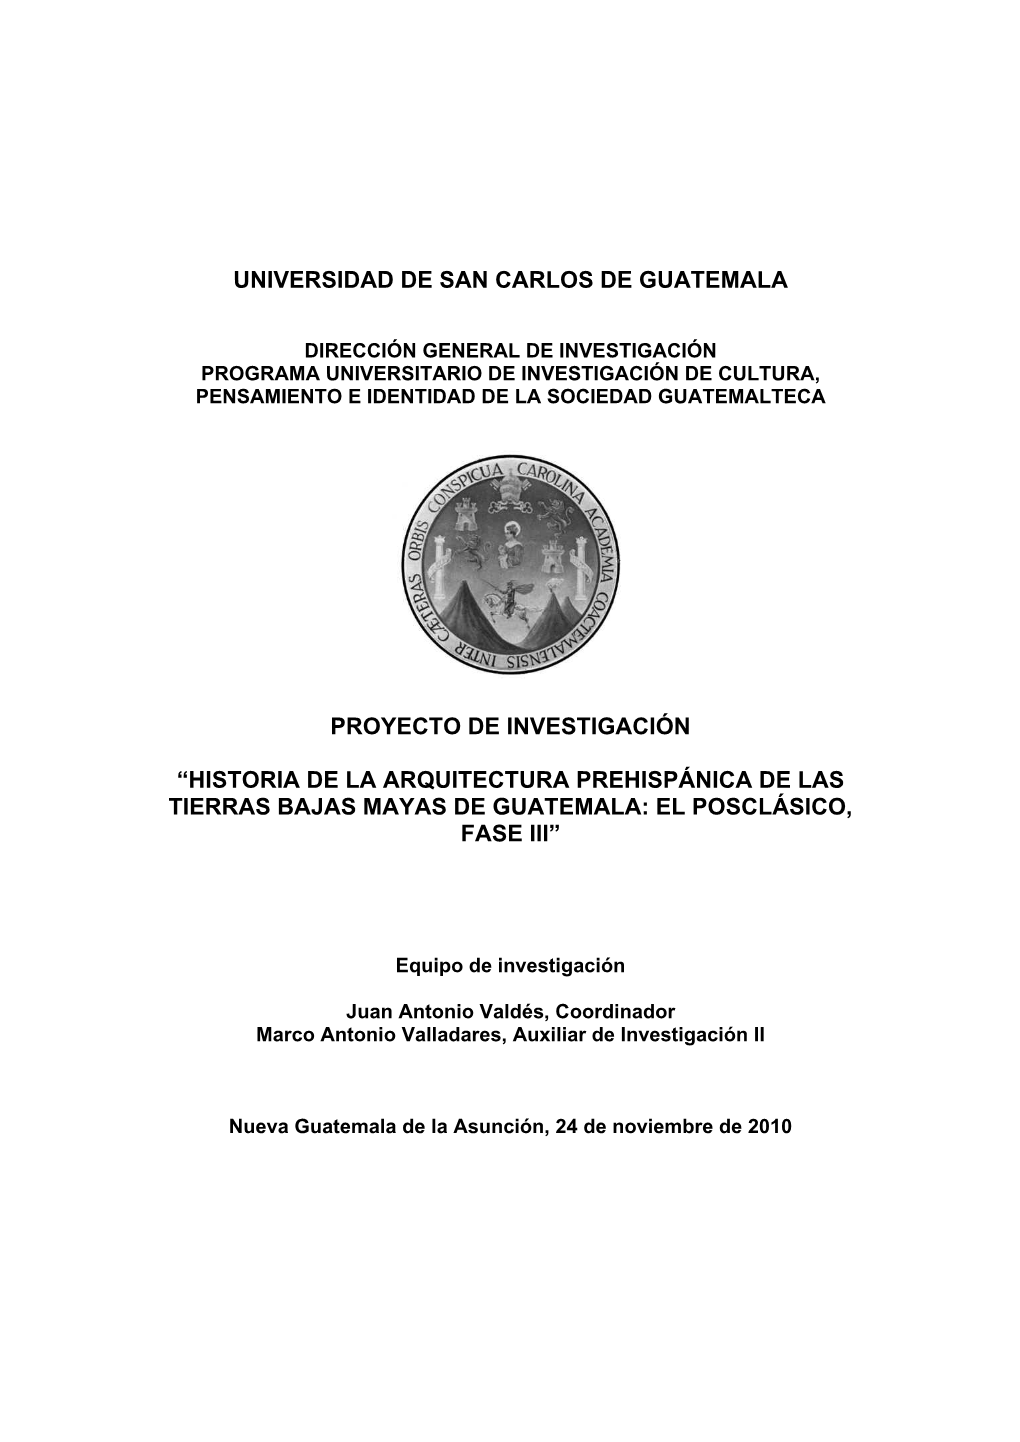 Historia De La Arquitectura Prehispánica De Las Tierras Bajas Mayas De Guatemala: El Posclásico, Fase Iii”